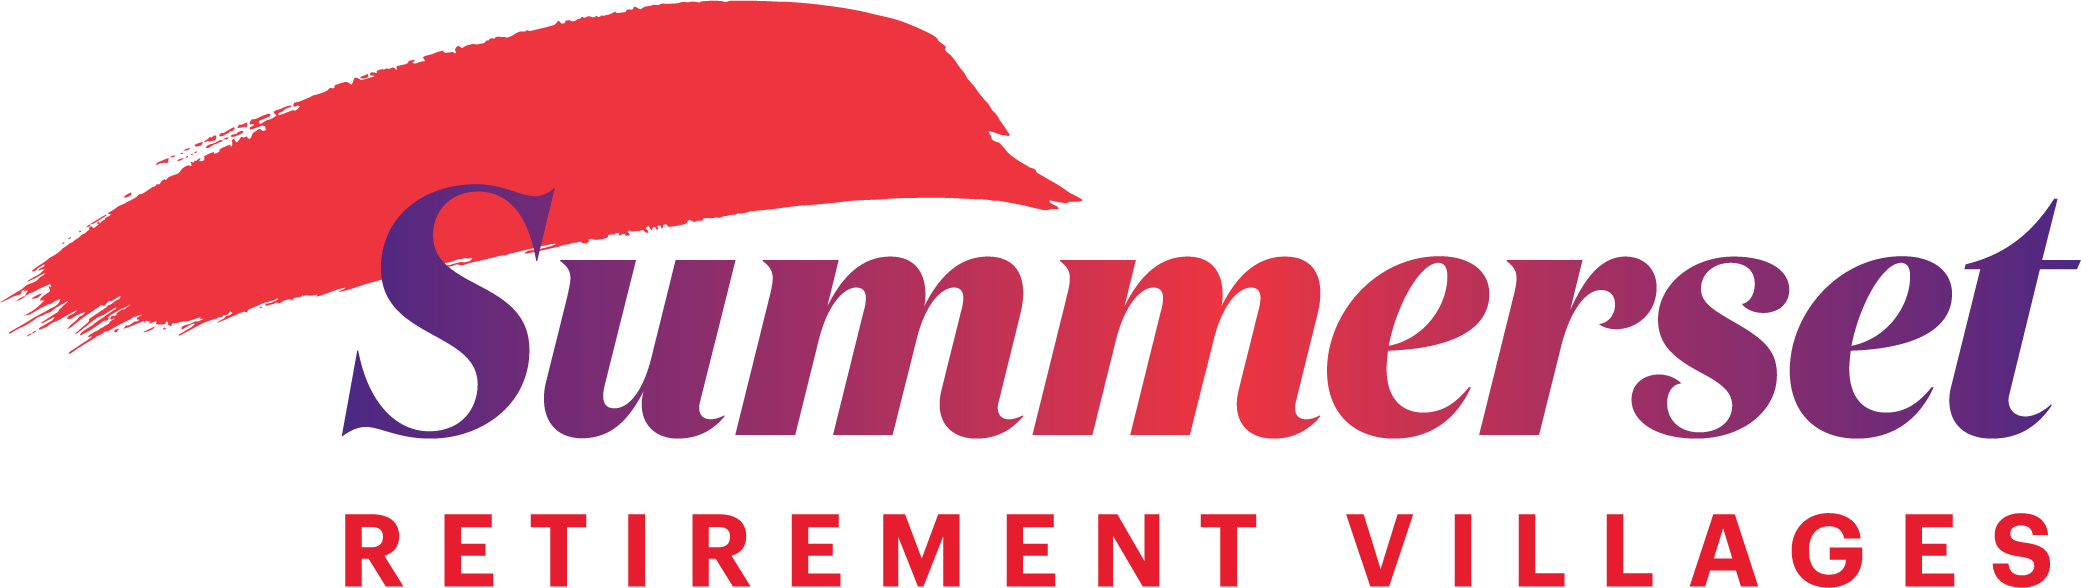 Summerset Blenheim logo